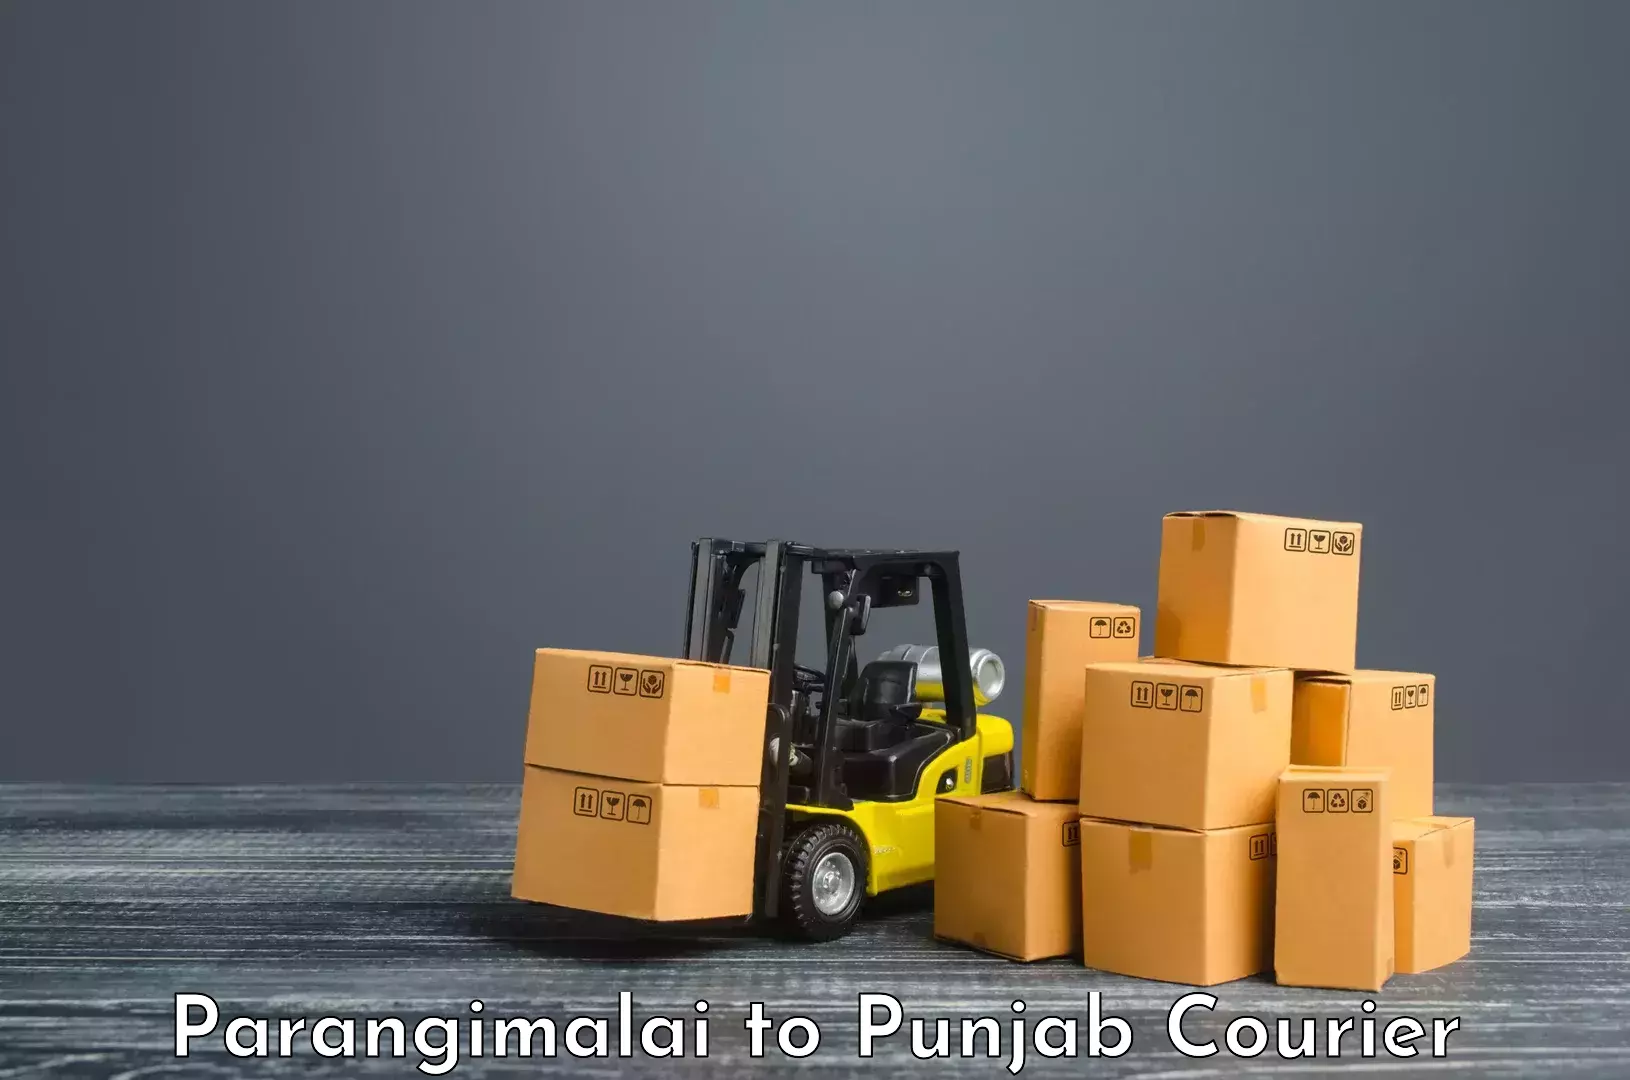 International courier rates Parangimalai to Faridkot